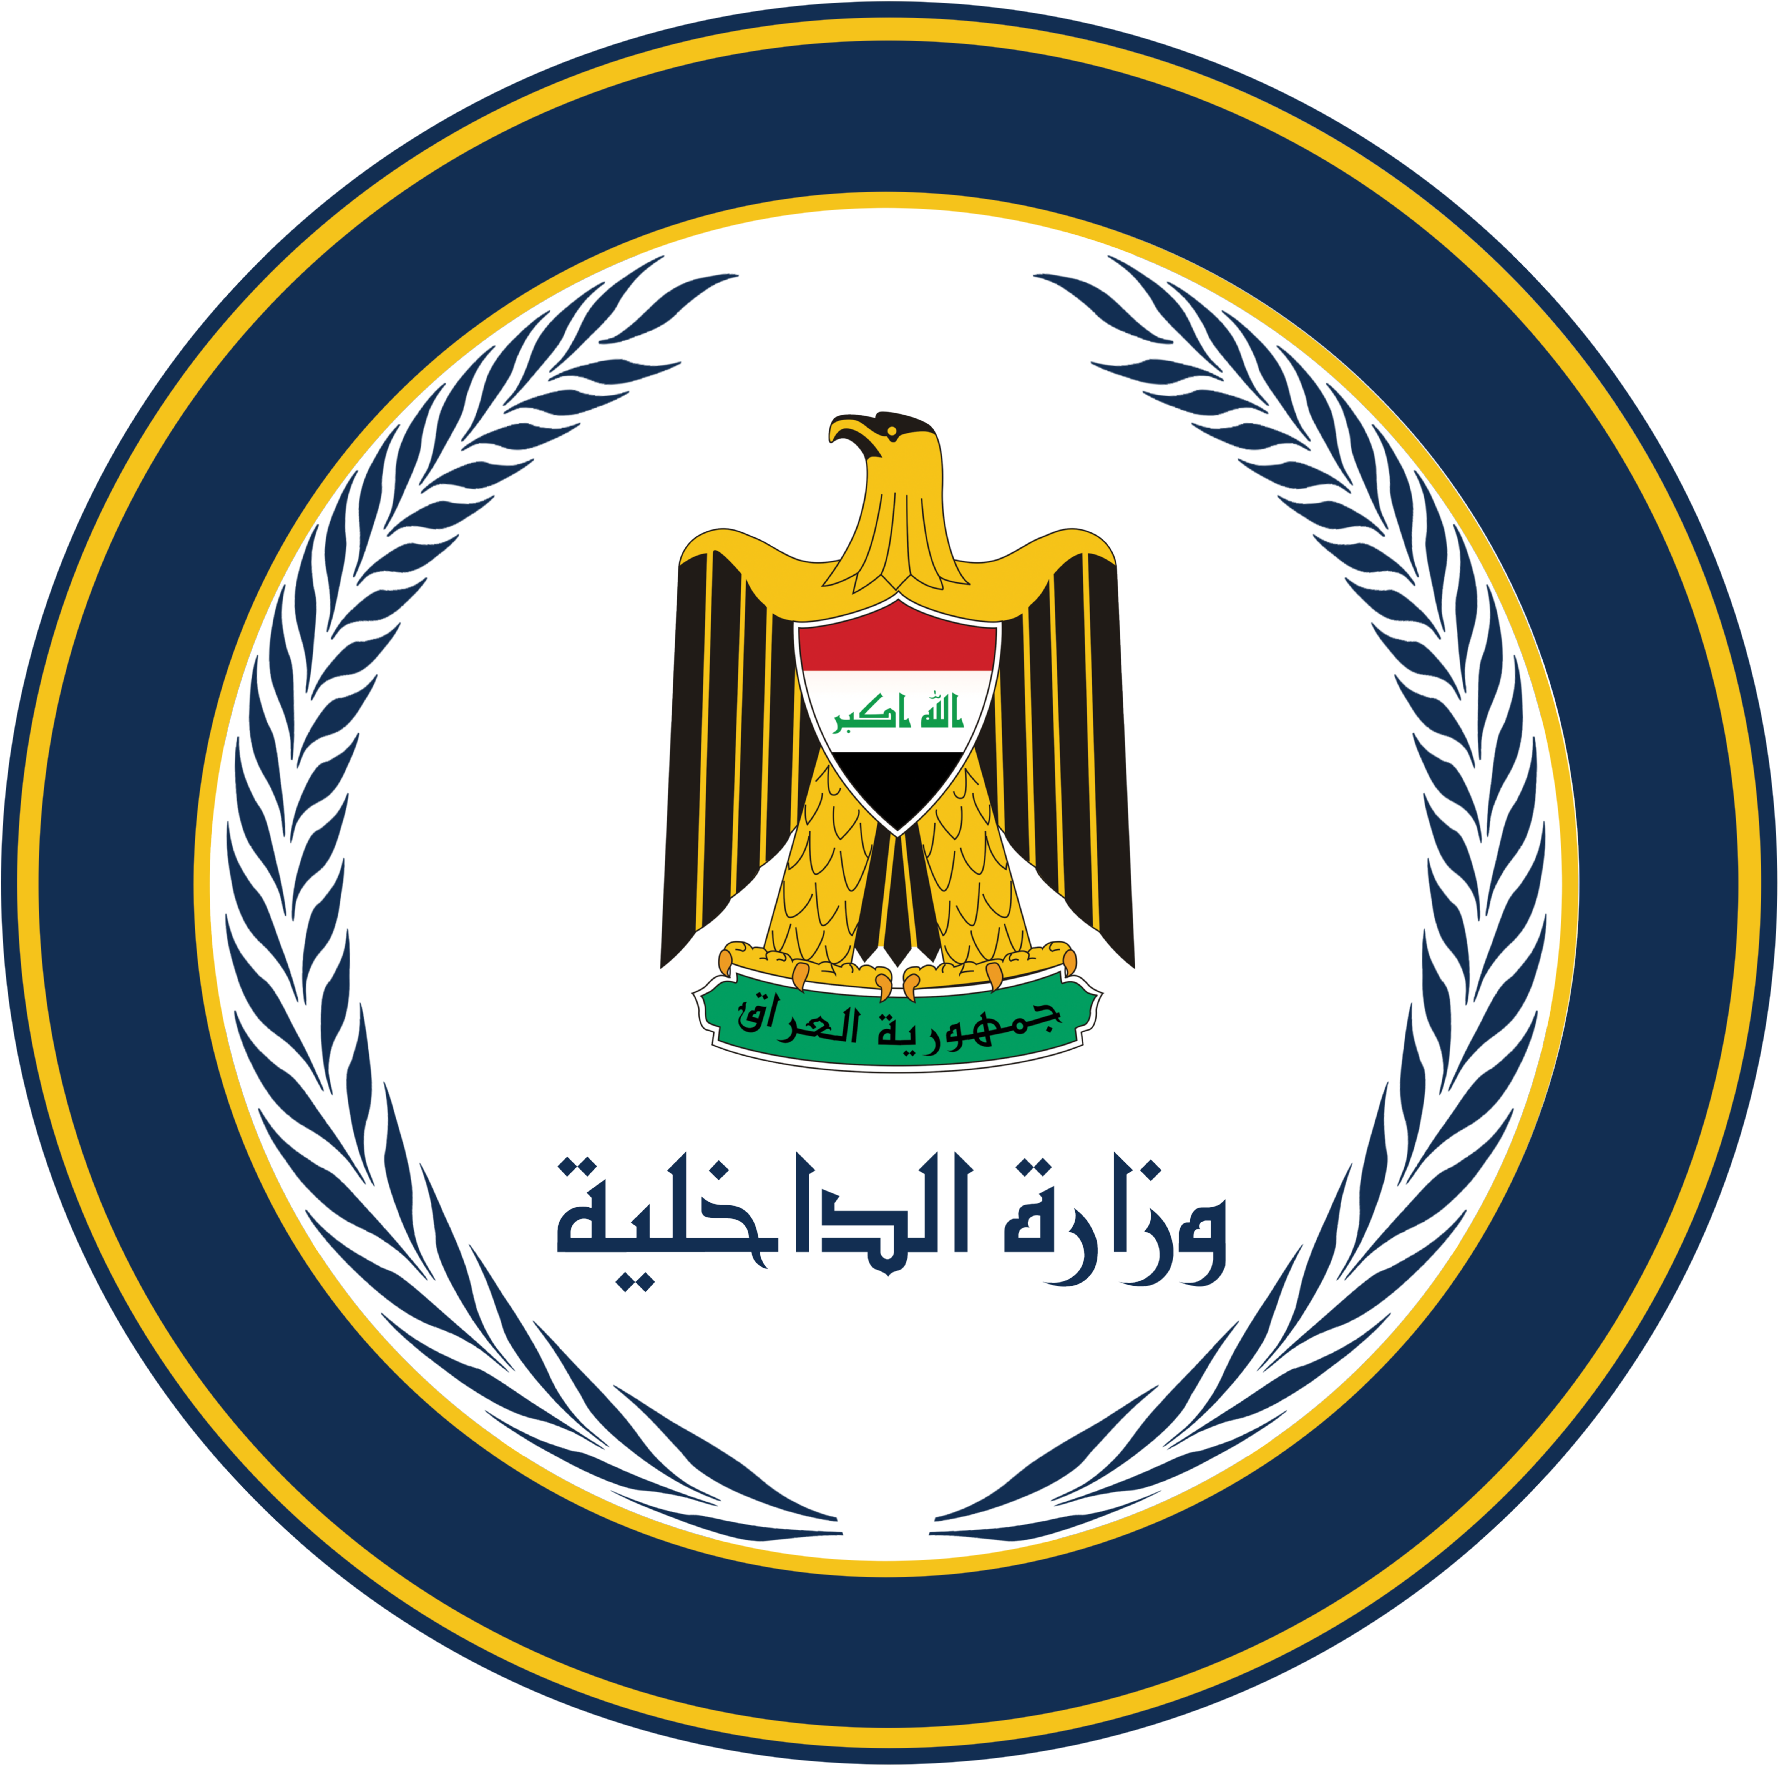 Iraq National Emblem